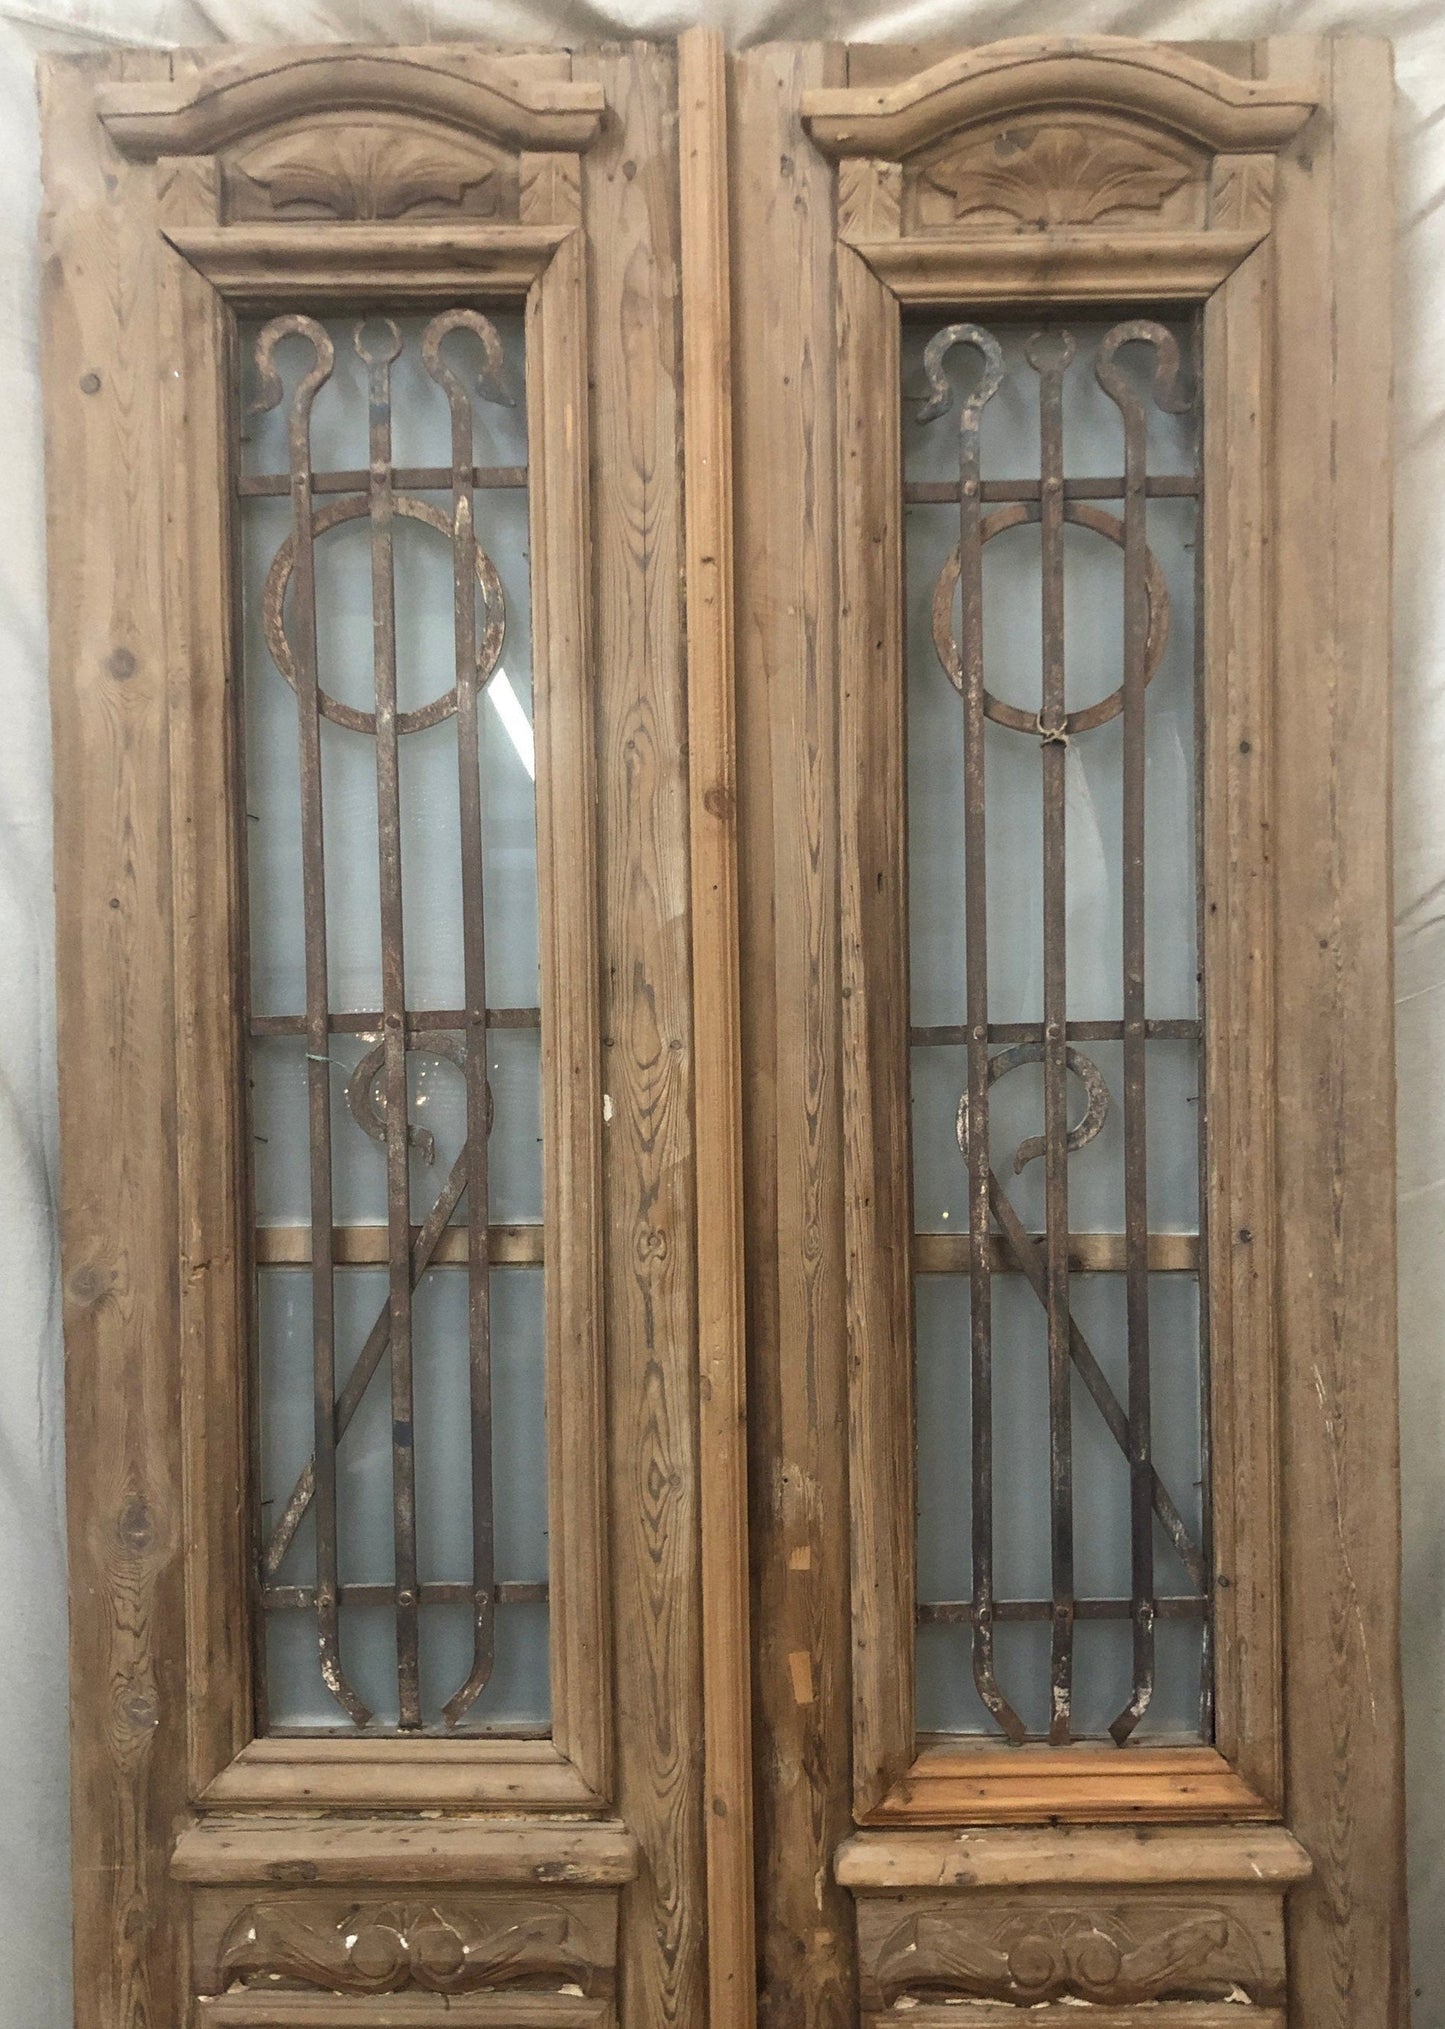 Antique panel doors (91.75x40.5) with iron C091